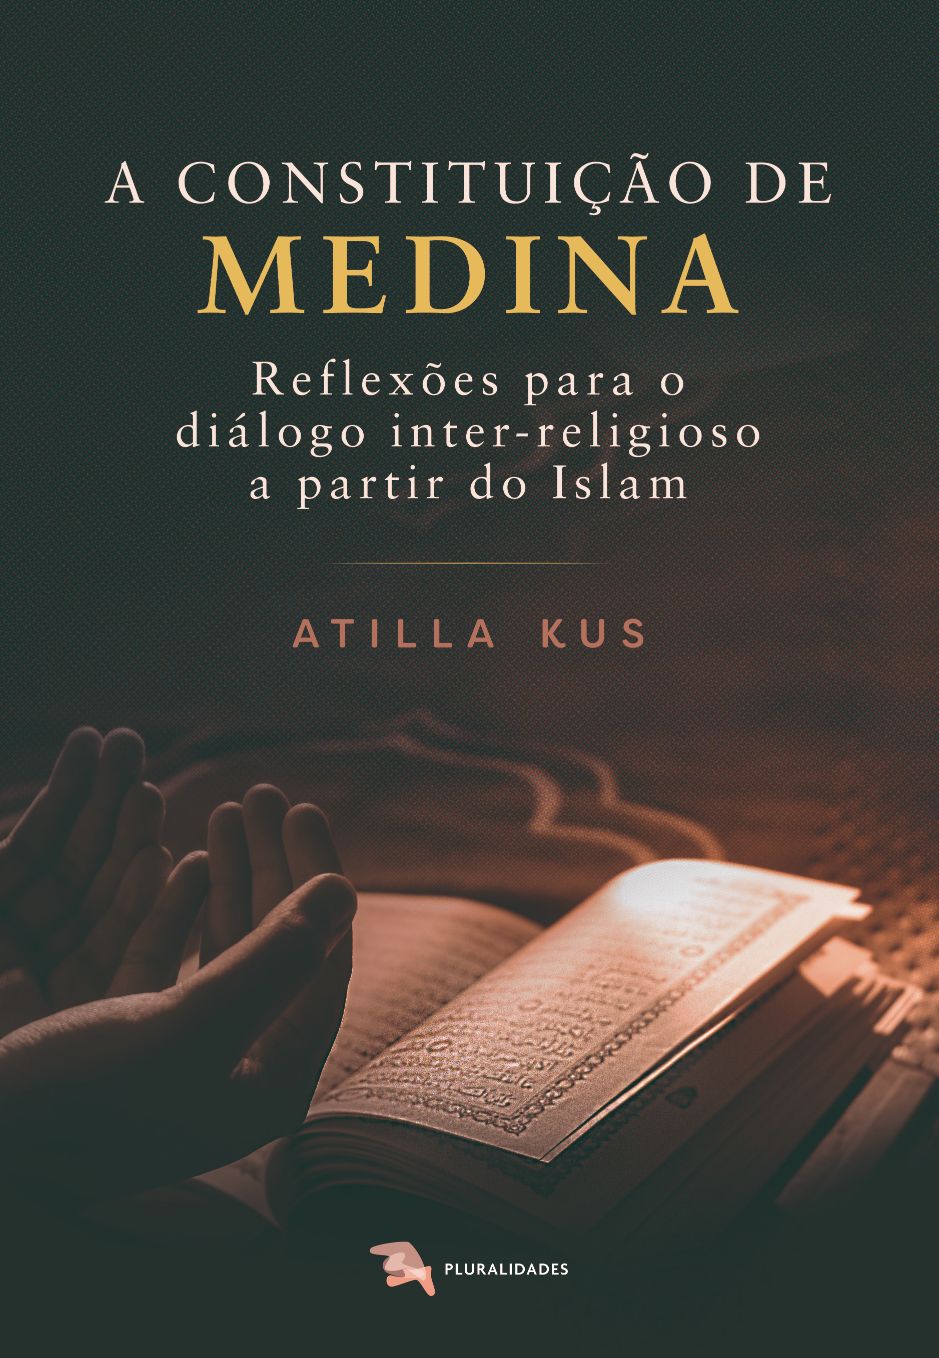 A constituição de medina - Atilla Kus